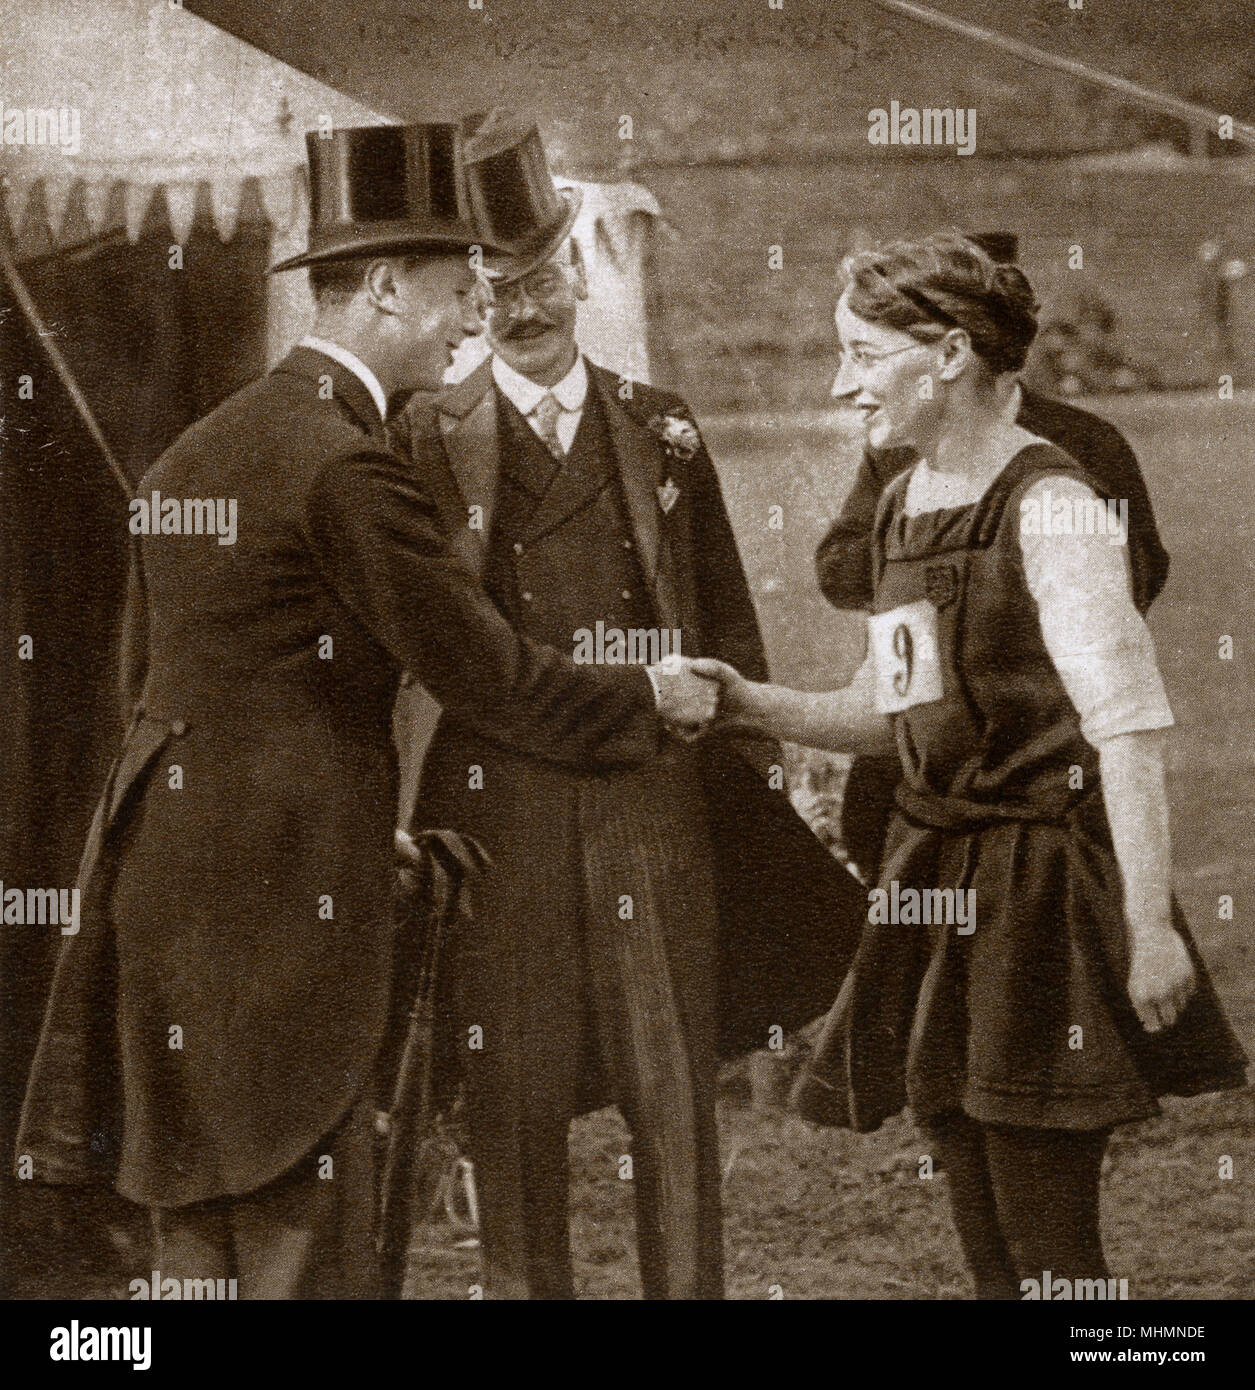 El Príncipe Alberto (futuro Rey George VI) (1895-1952), que recién se había convertido en duque de York visitando el Servicio Civil día deportivo en Stamford Bridge (el hogar de Chelsea Football Club). La imagen le muestra un apretón de manos con la Srta. D. Leach, un competidor. Fecha: 1920 Foto de stock